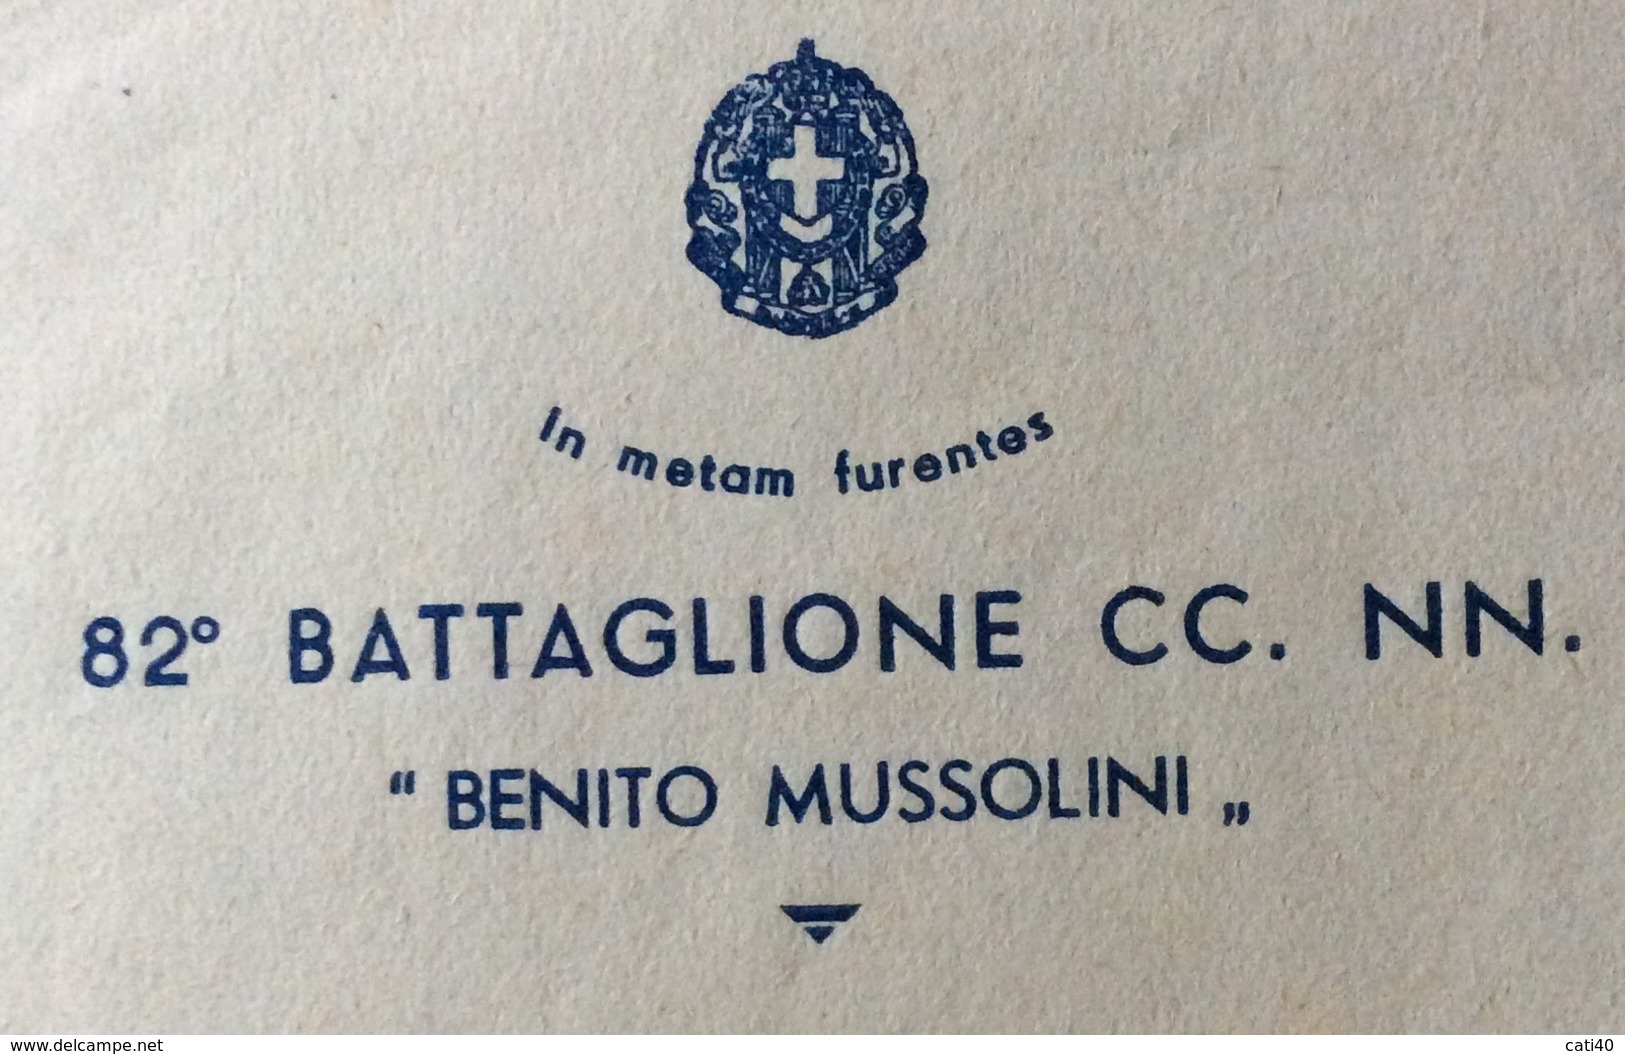 FASCISMO  "in Metas Furente" 82 BATTAGLIONE CC.NN. " BENITO MUSSOLINI " BUSTA E LETTERA INTESTATE POTENZA 4/6/35 - Historical Documents